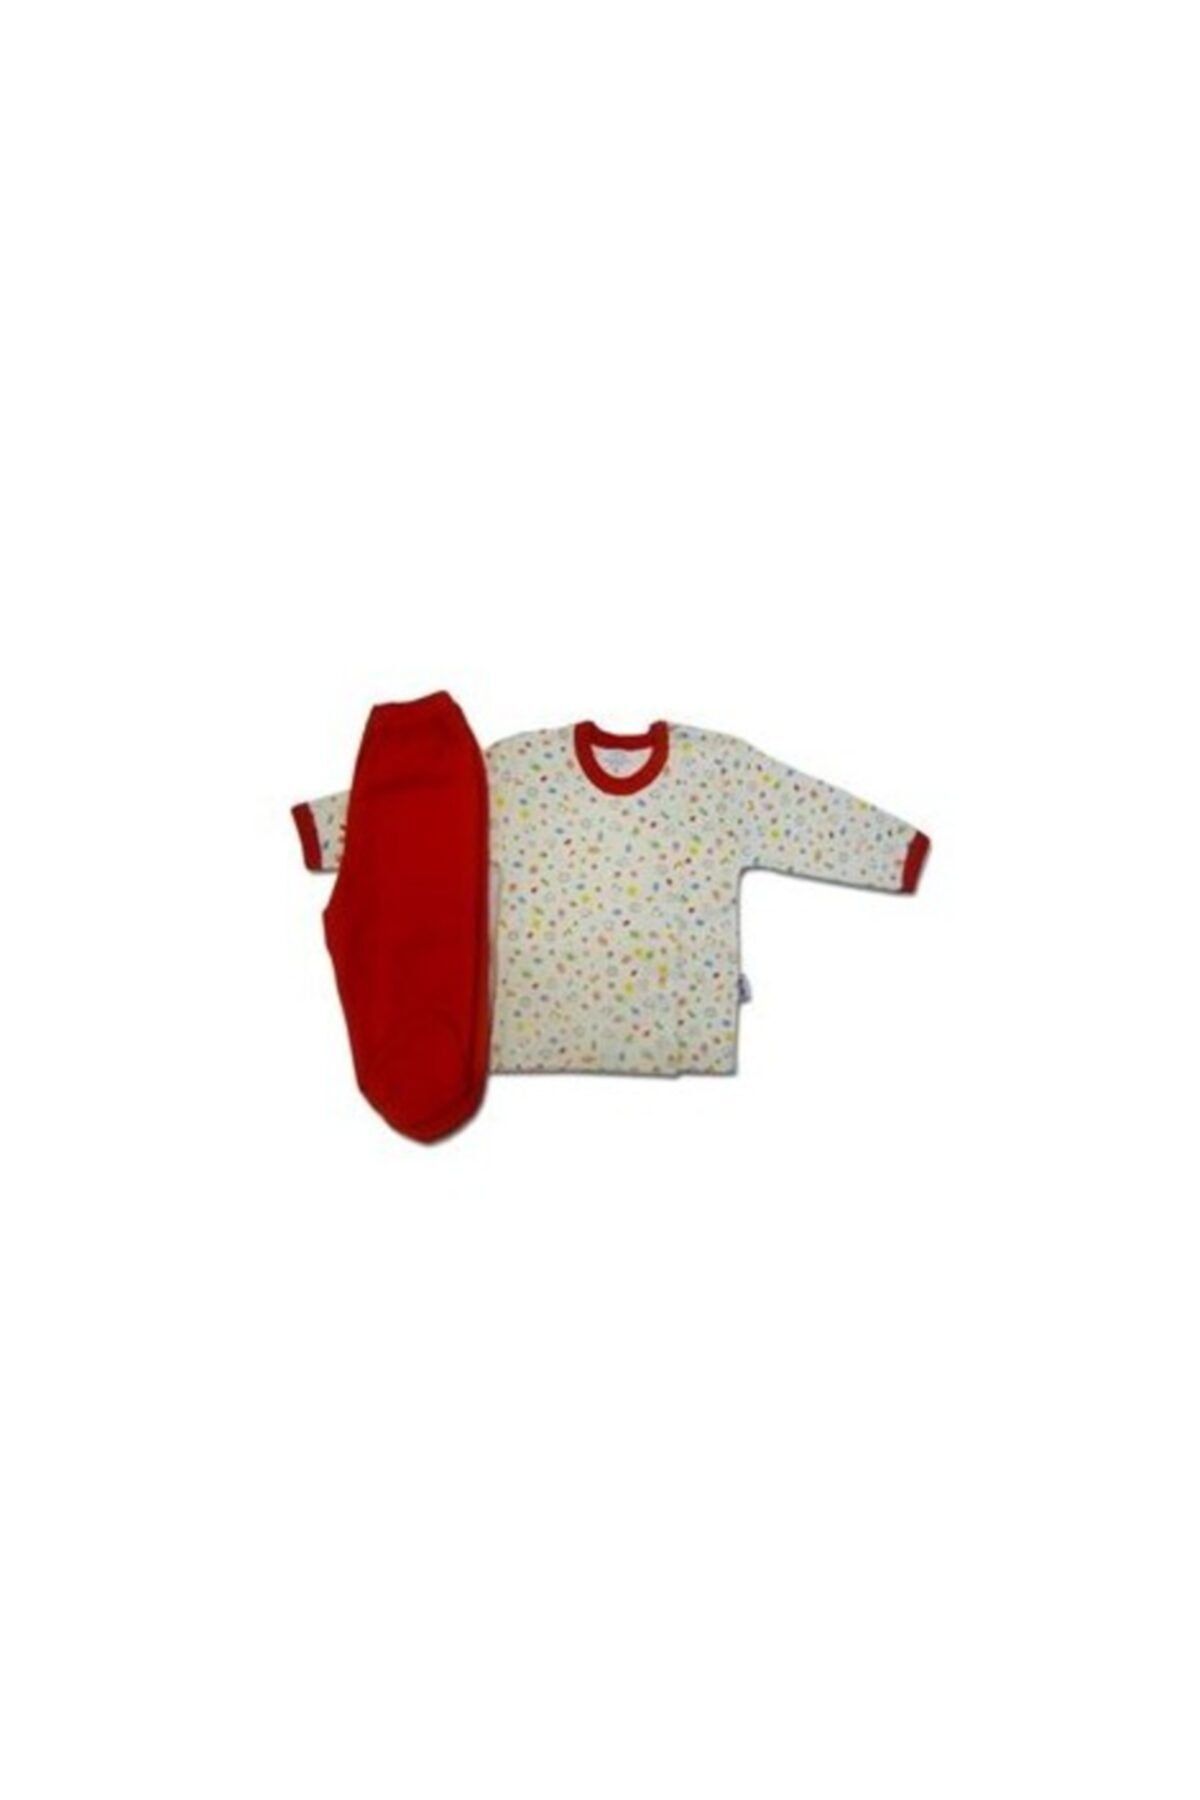 Sema Baby Bebek Pijama Takımı - Kırmızı